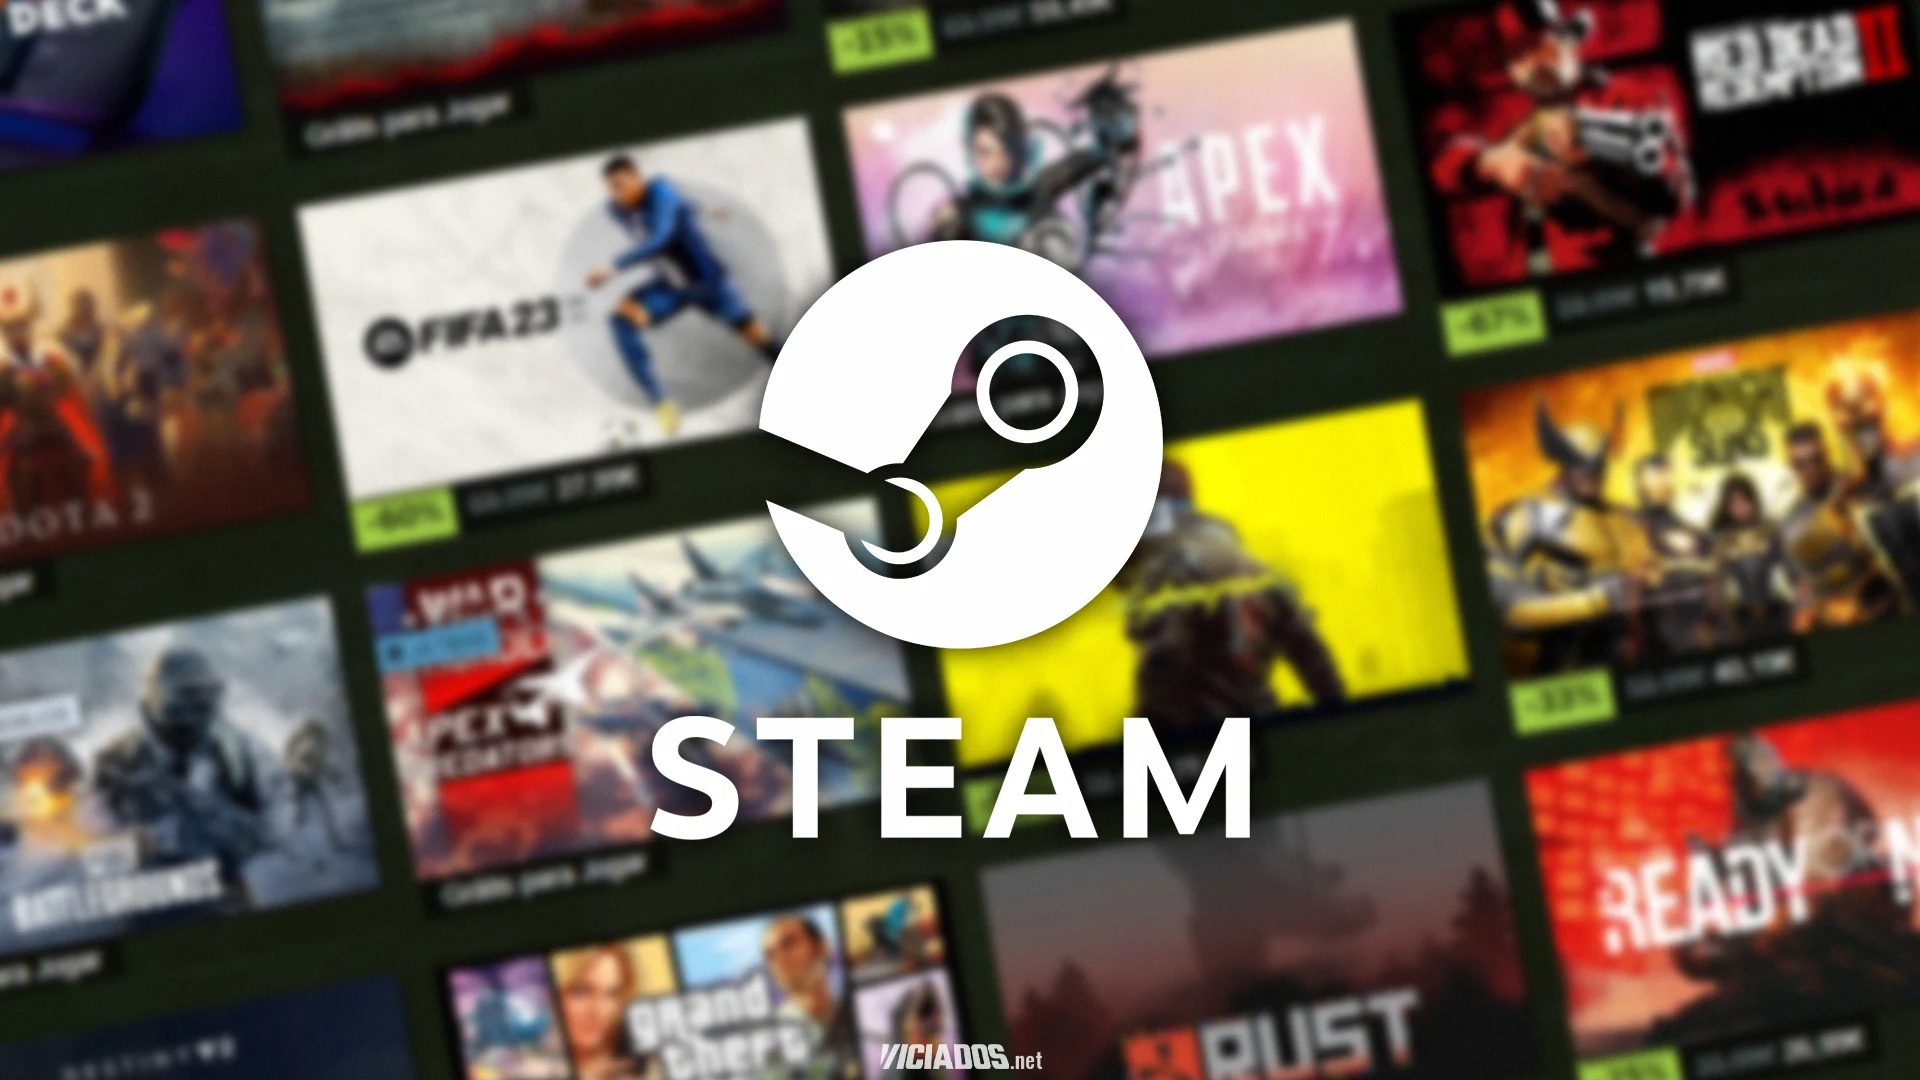 Steam | Lendário jogo da Bethesda está com 75% de desconto em nova promoção 2023 Viciados